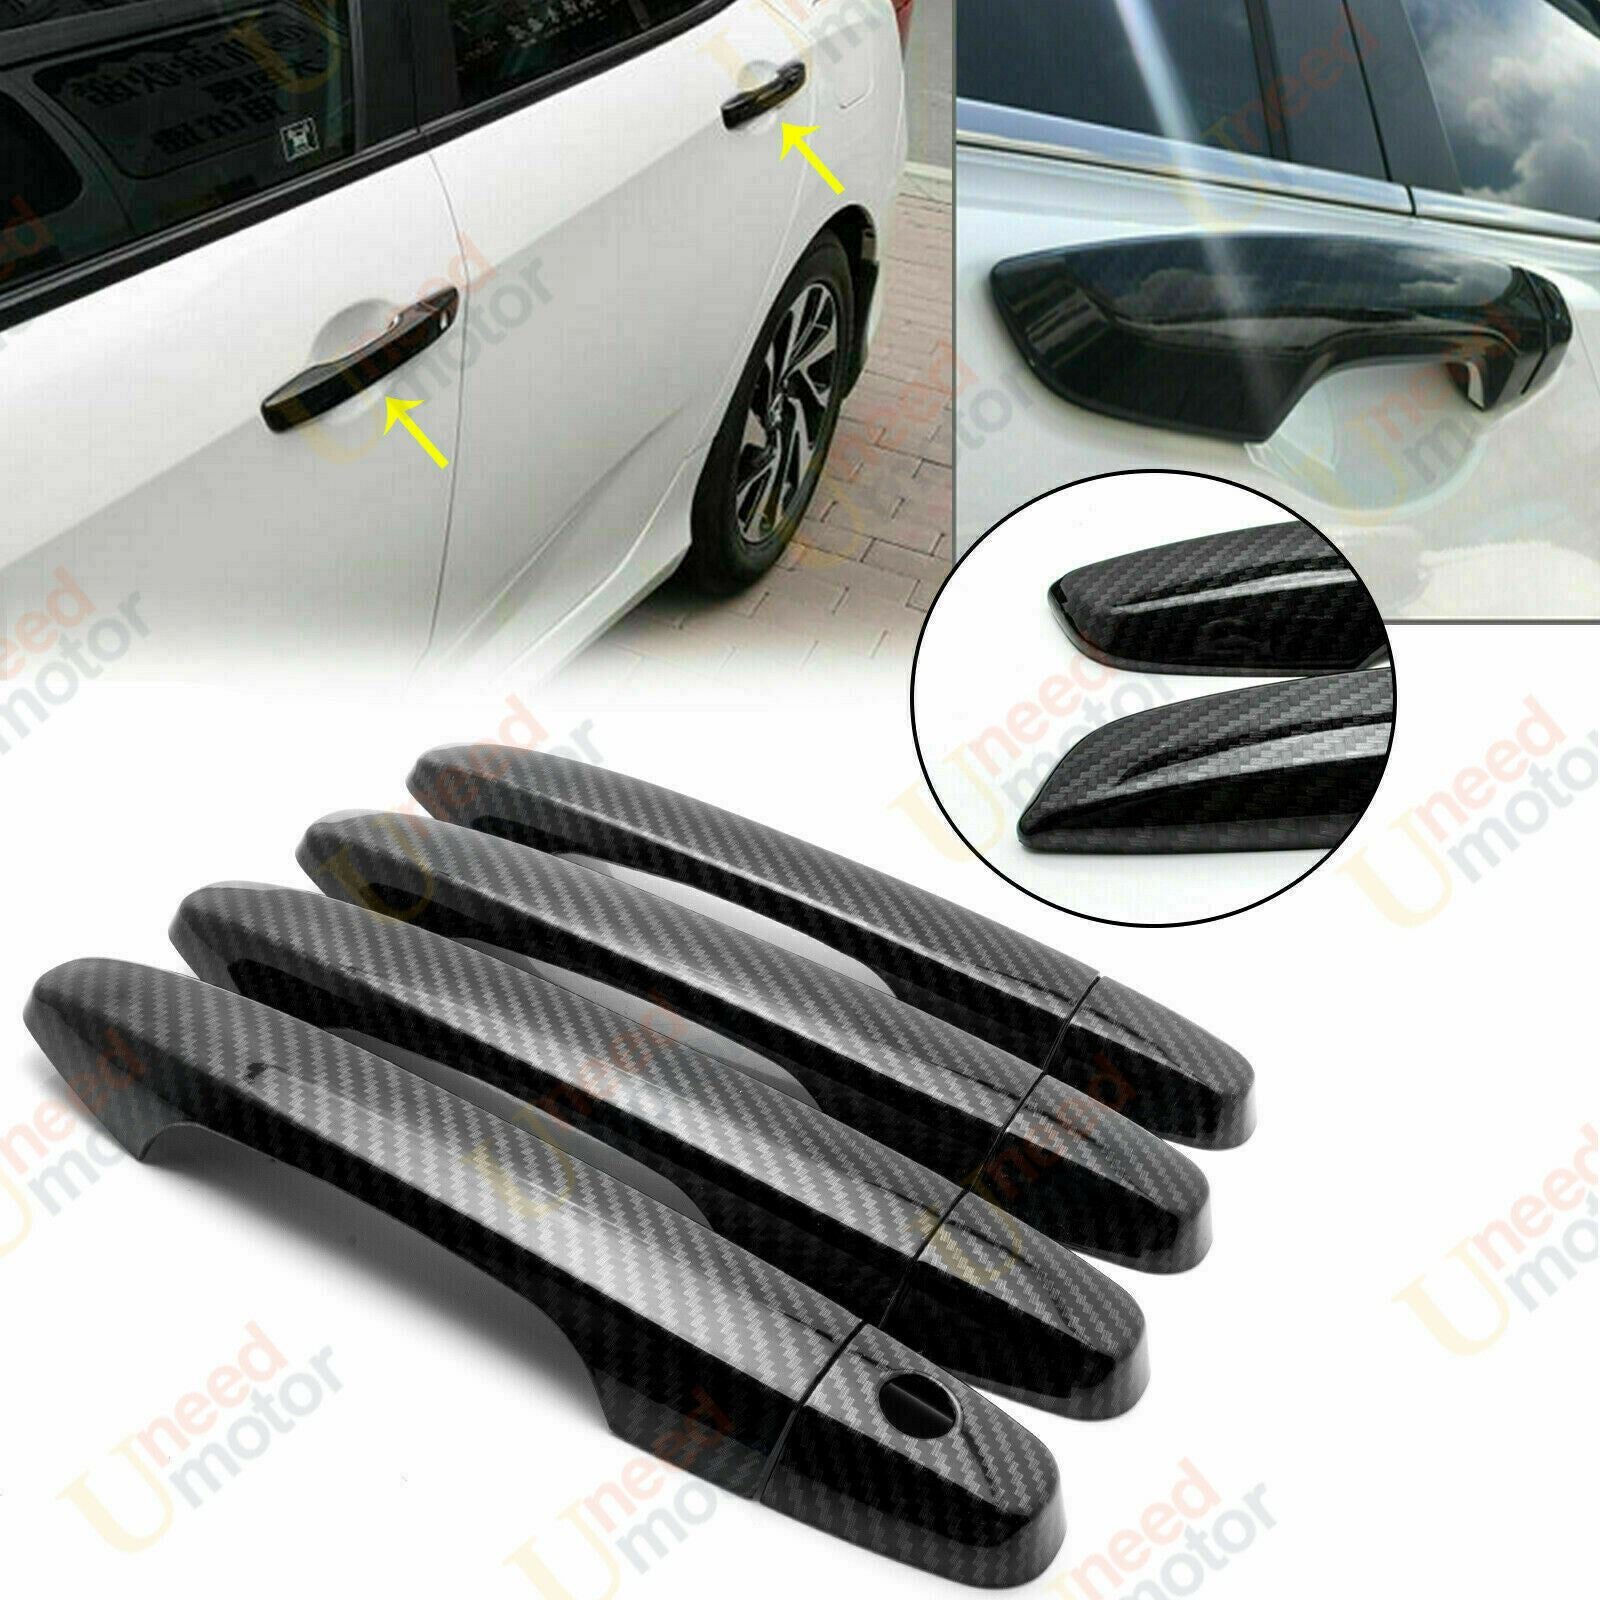 Fit 2012-2016 Honda CR-V Side Door Handle Cover (Carbon Fiber Print)